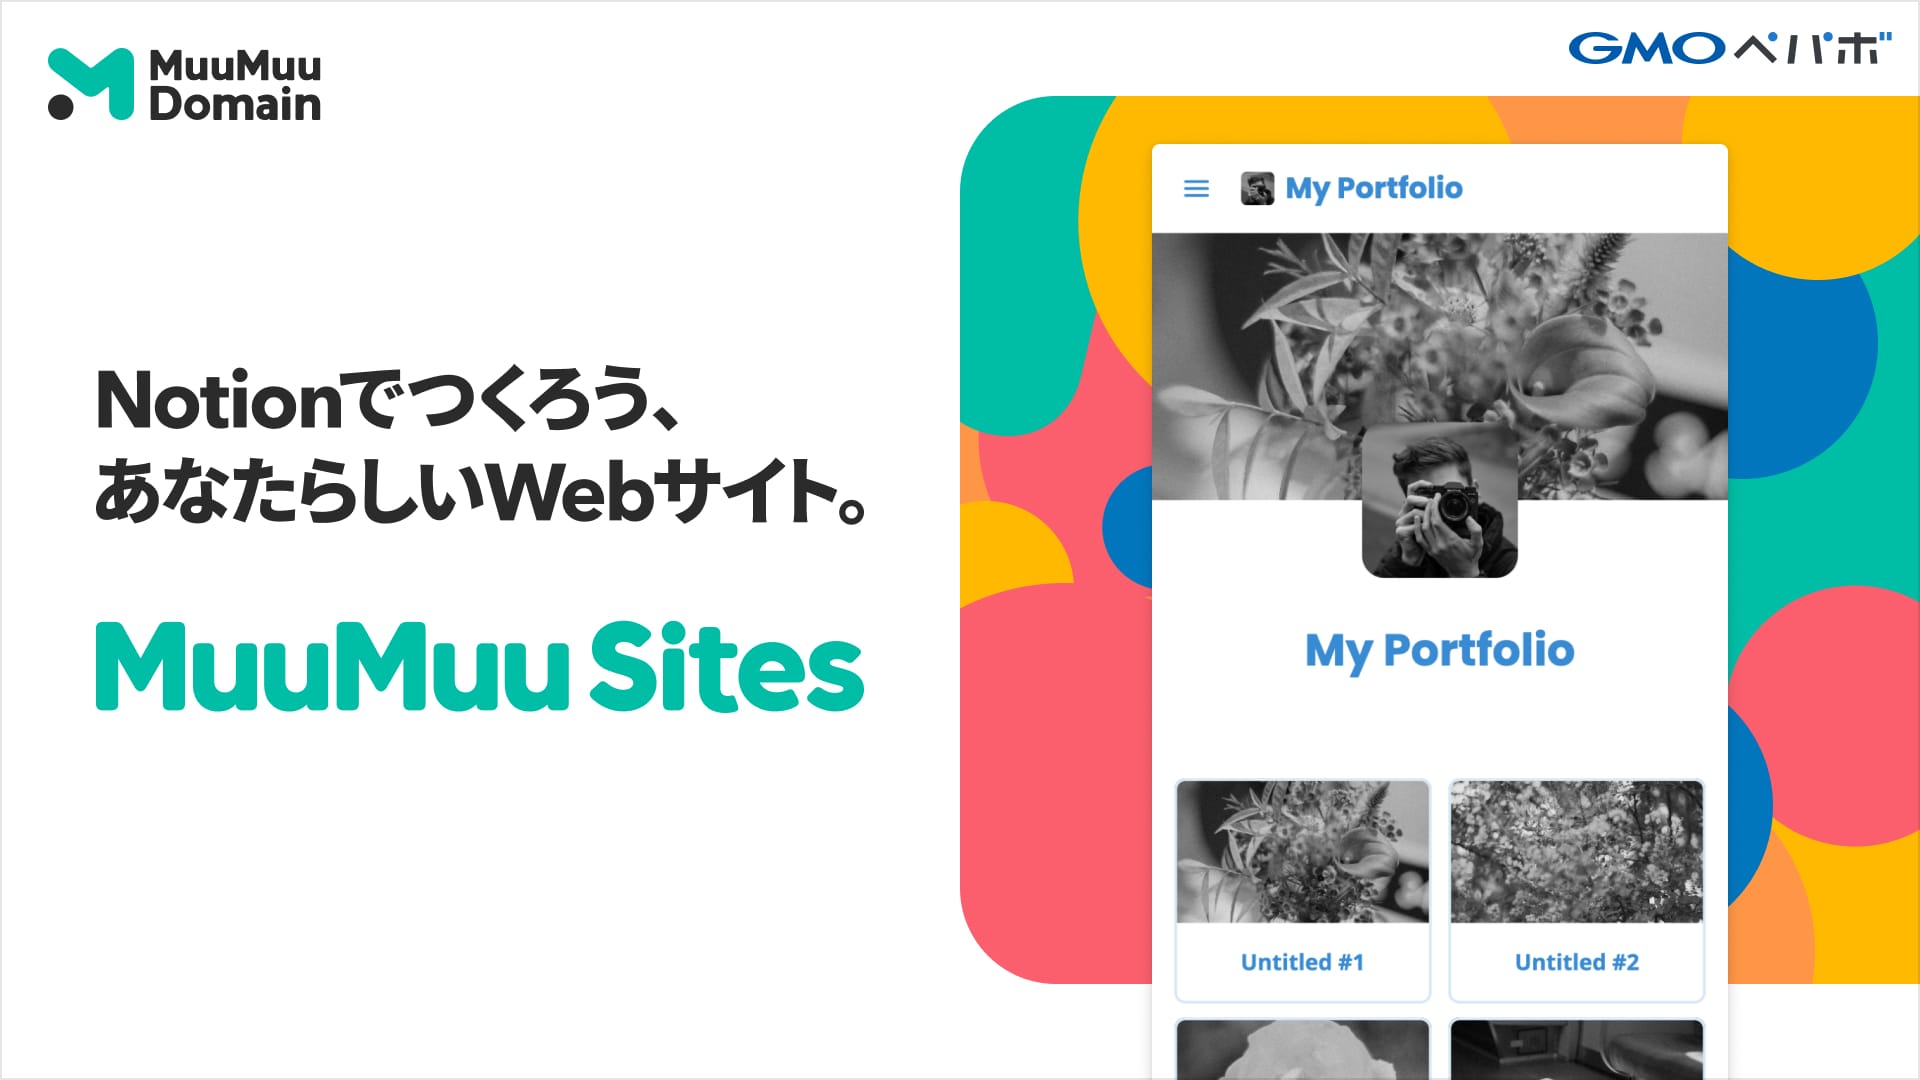 鮮やかなグラフィックが印象的なMuuMuu Sitesのアイキャッチ画像。MuuMuu Sitesで作られた「My Portfolio」というWebサイトイメージの横には「Notionでつくろう、あなたらしいWebサイト。」というキャッチコピーが書かれています。